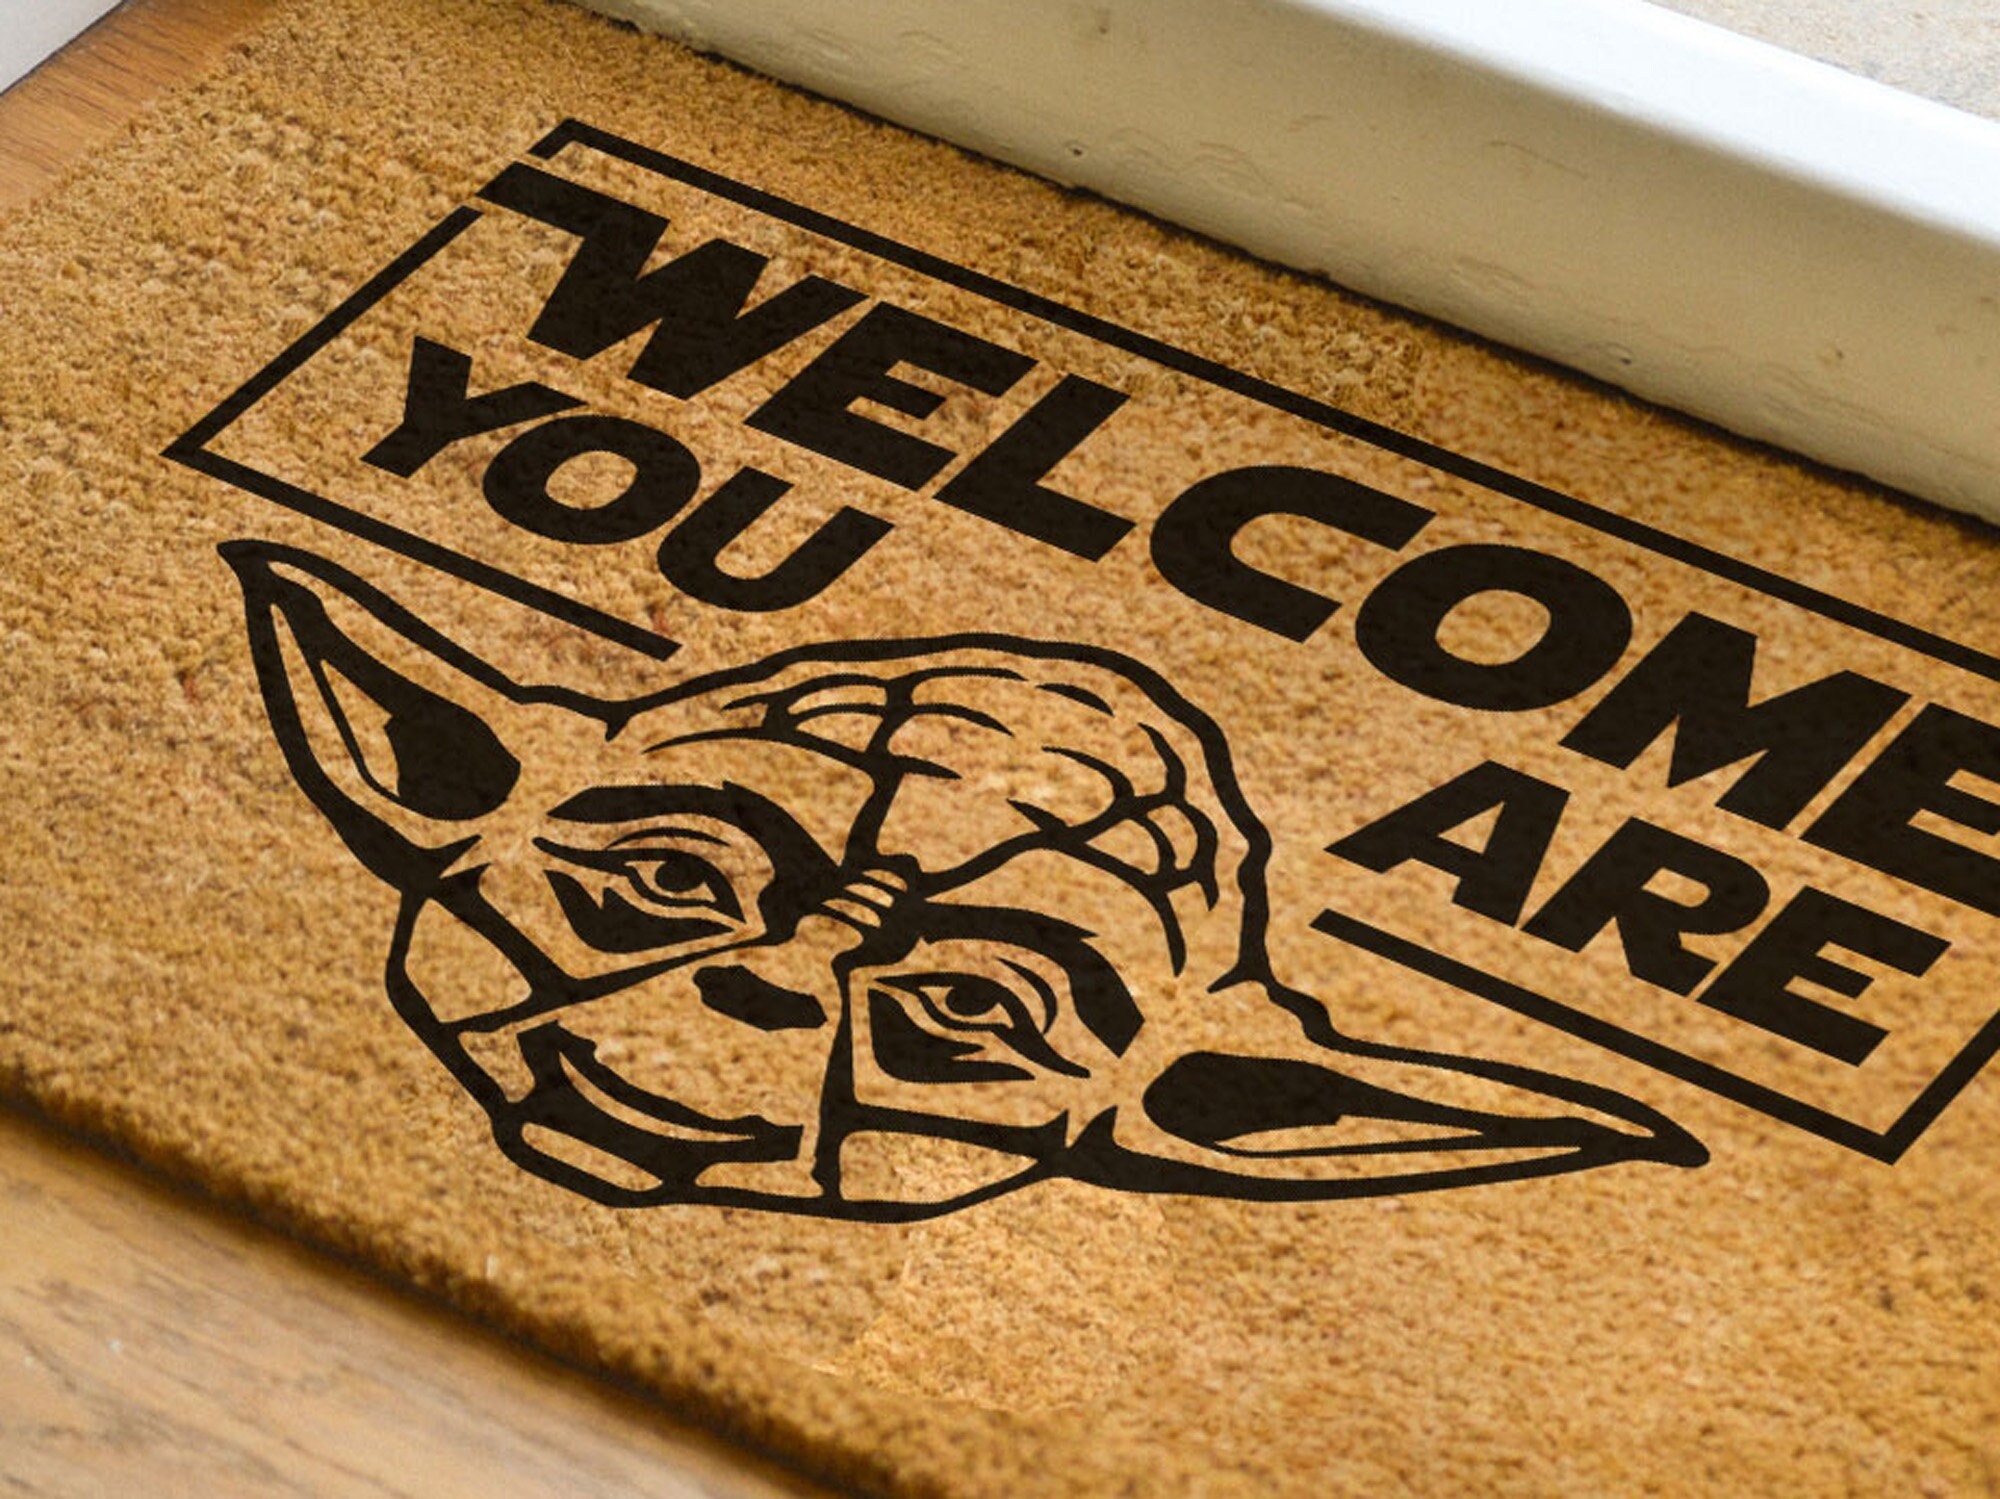 Bienvenido eres™ alfombra de puerta divertida star wars yoda geek